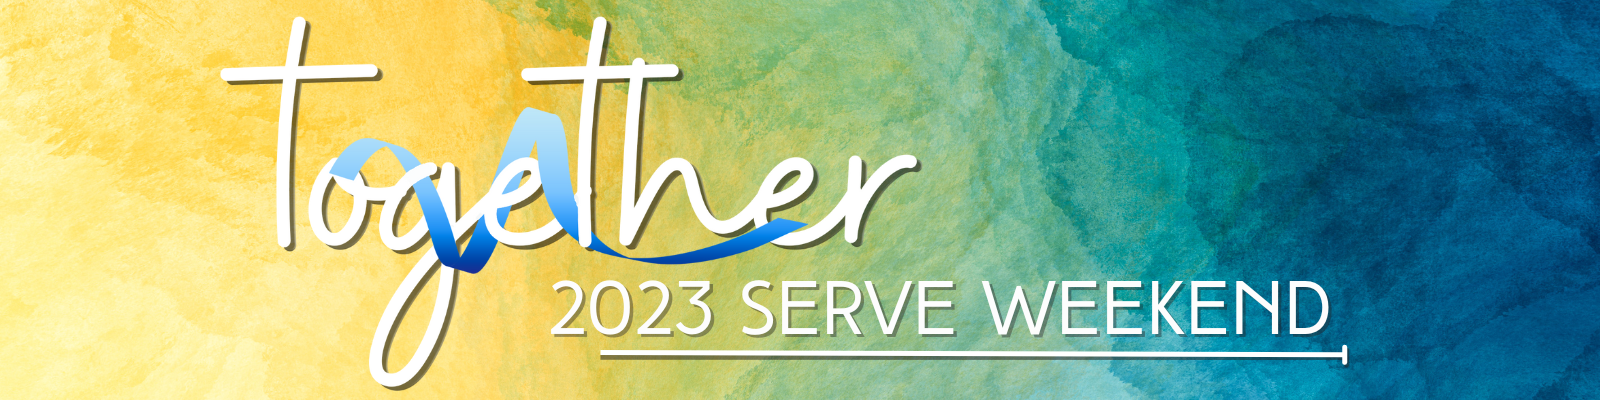 Serve Weekend - Together - web header